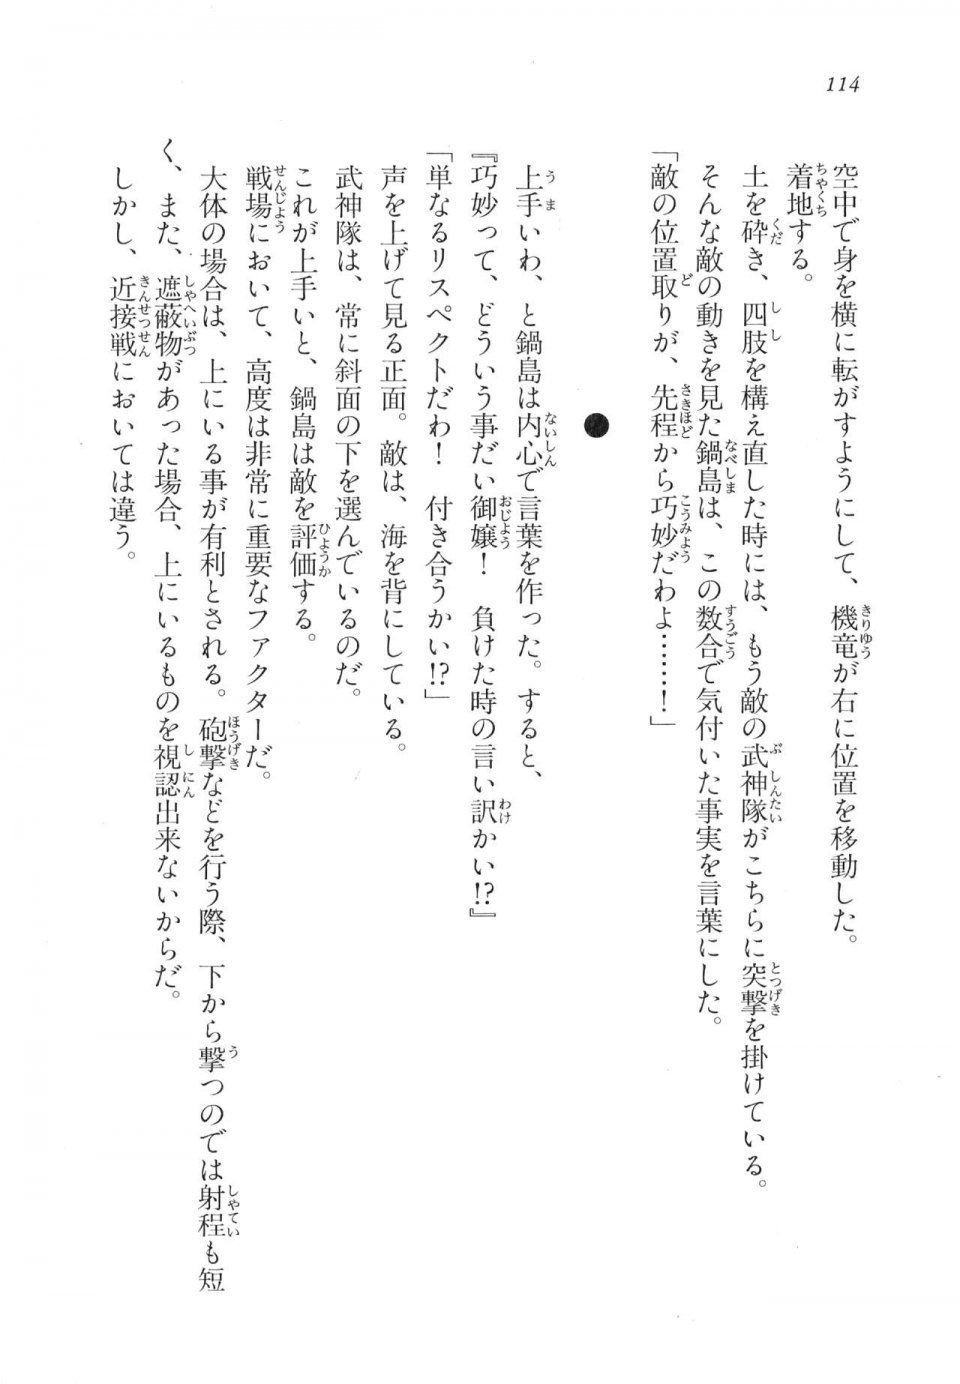 Kyoukai Senjou no Horizon LN Vol 17(7B) - Photo #114